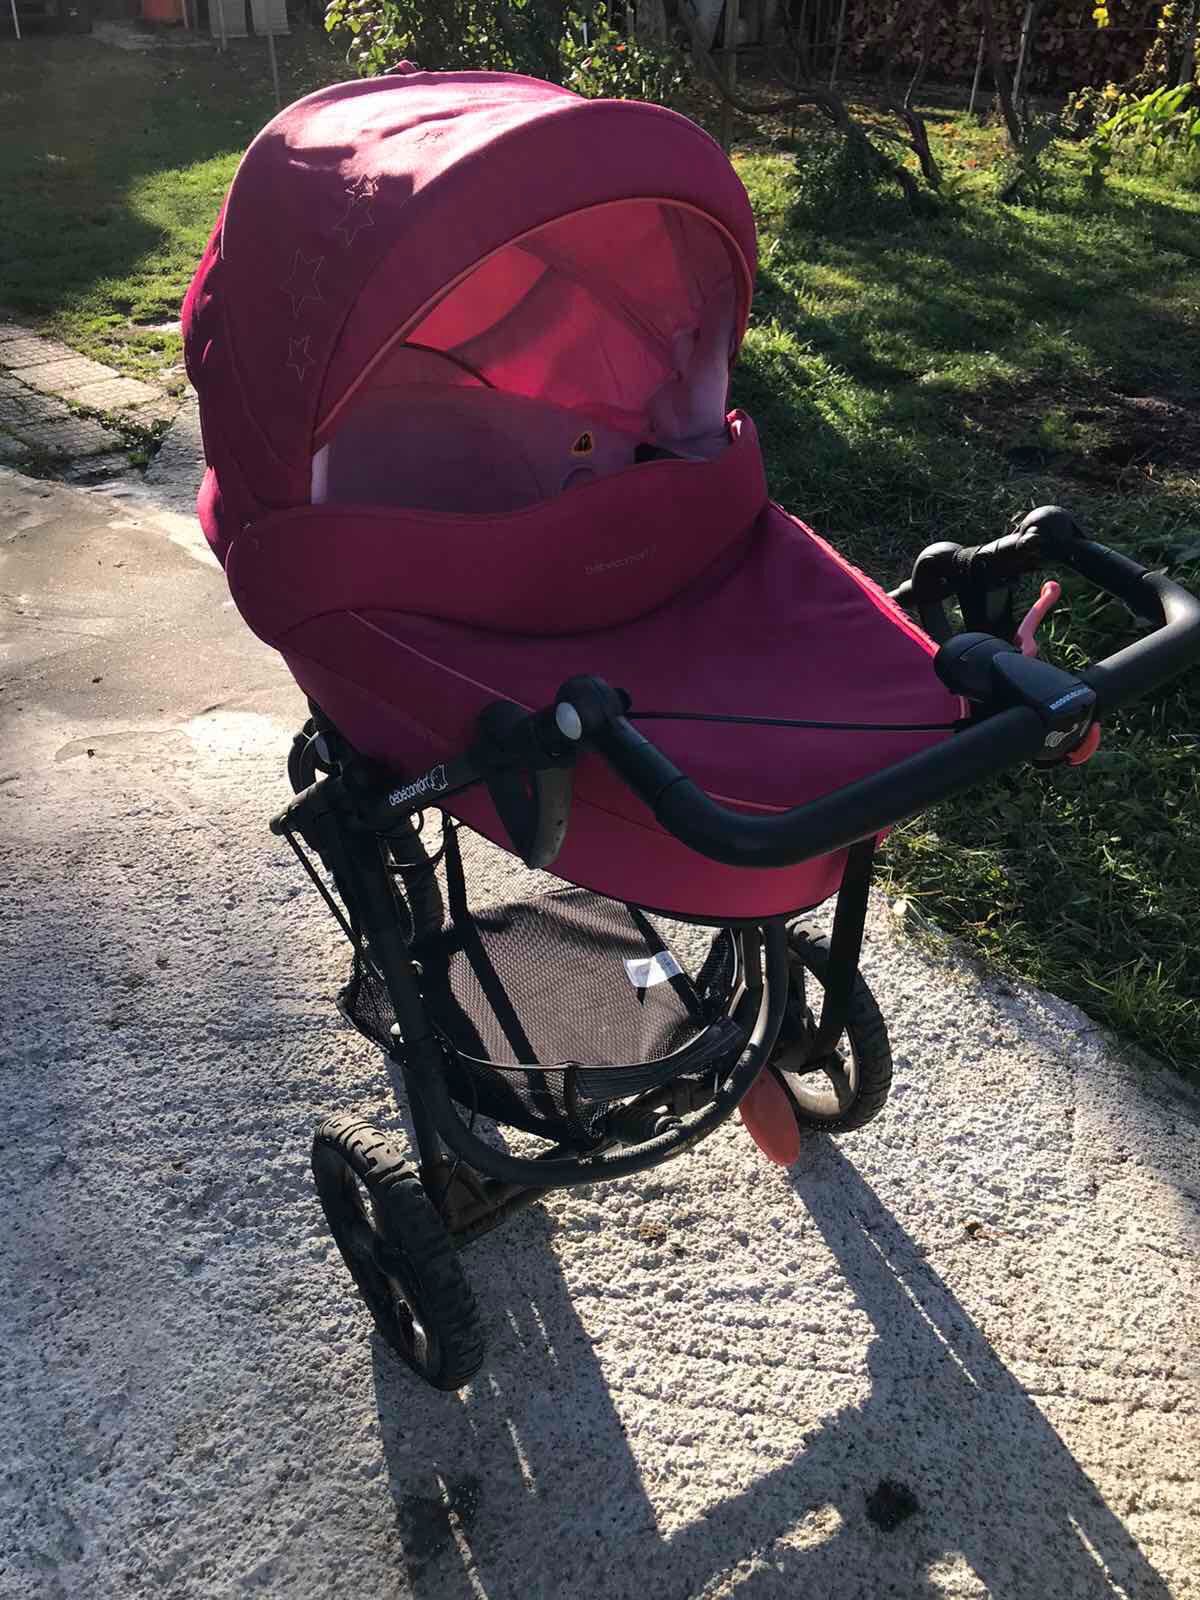 Детска количка bebecomfort